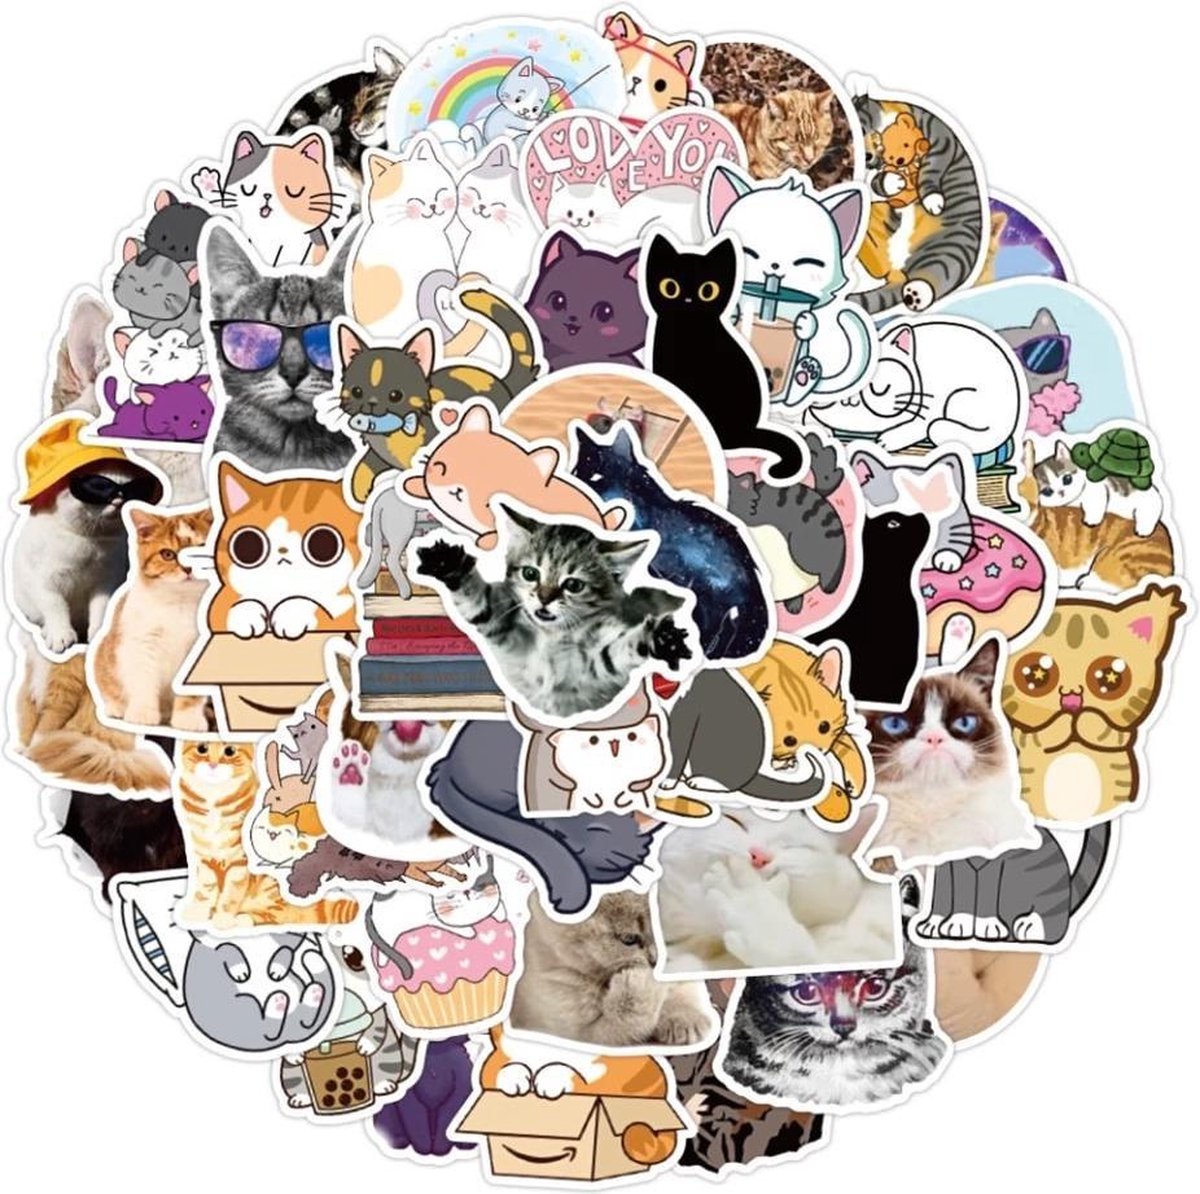 100 stuks Poezen Stickers - Cartoon en Foto - Voor op de fiets, beker, laptop, schoolspullen, kamer, etc - School - Kinderen - Stickers - Plakken - Stikker - Cats - Katten - Schattig - Meisjes - Bundel - Set - 100 - Sticker mix